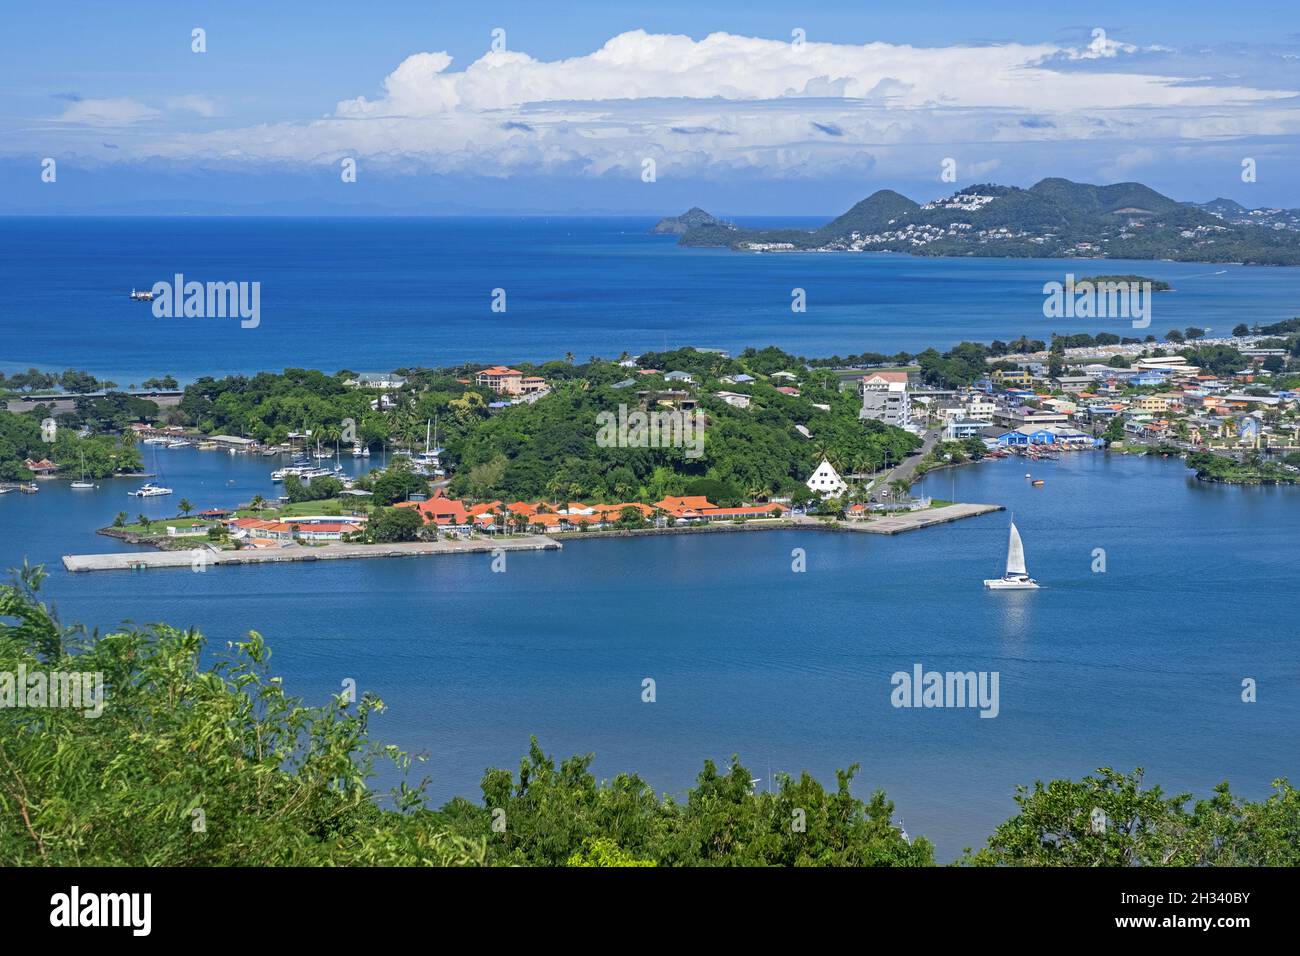 Vue sur la baie et port abrité / port de Castries, capitale de l'île Sainte-Lucie dans la mer des Caraïbes Banque D'Images